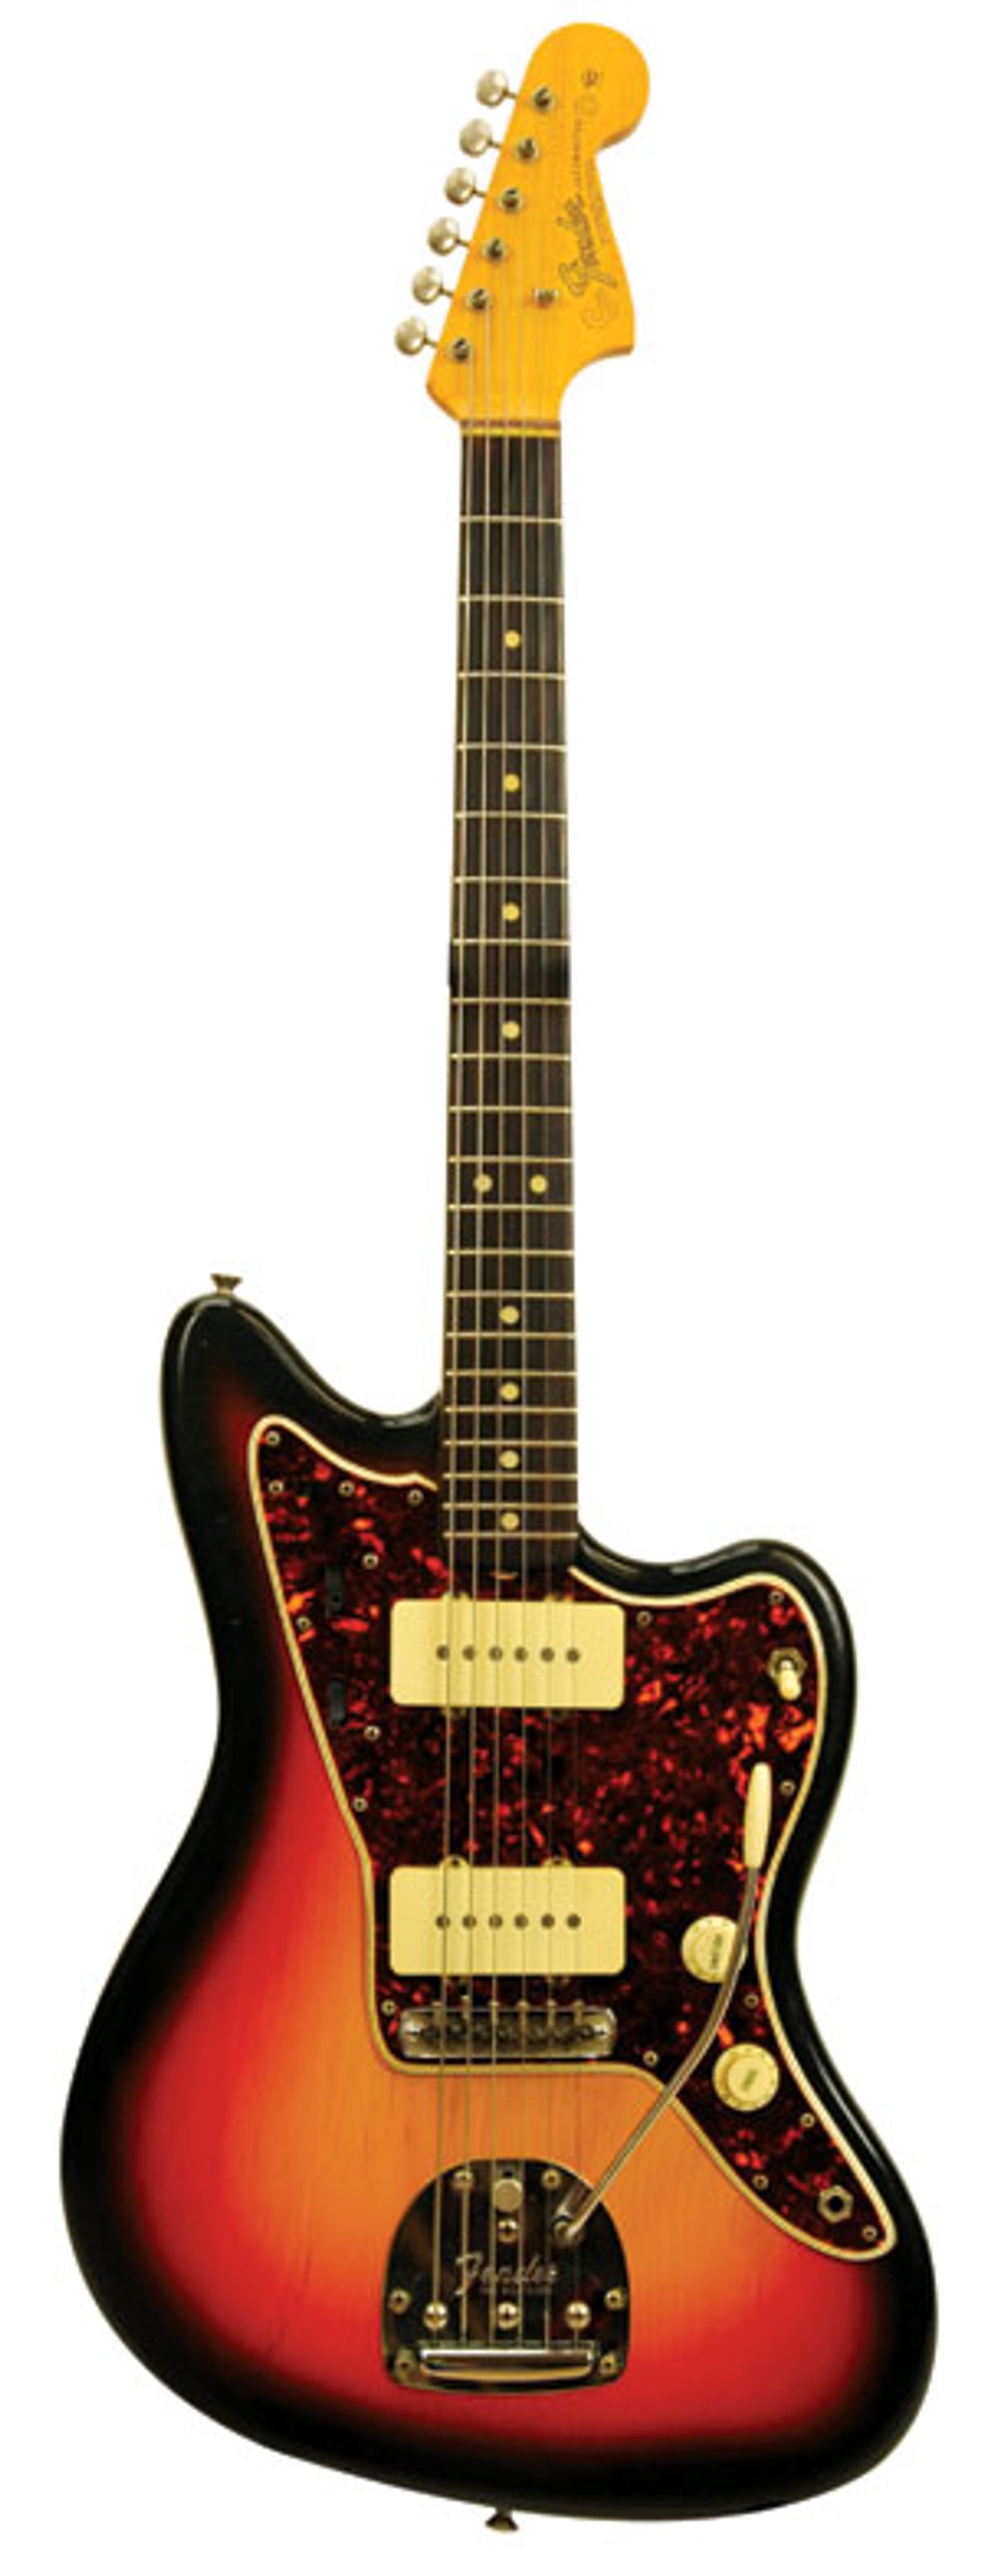 1965 Fender Jazzmaster 